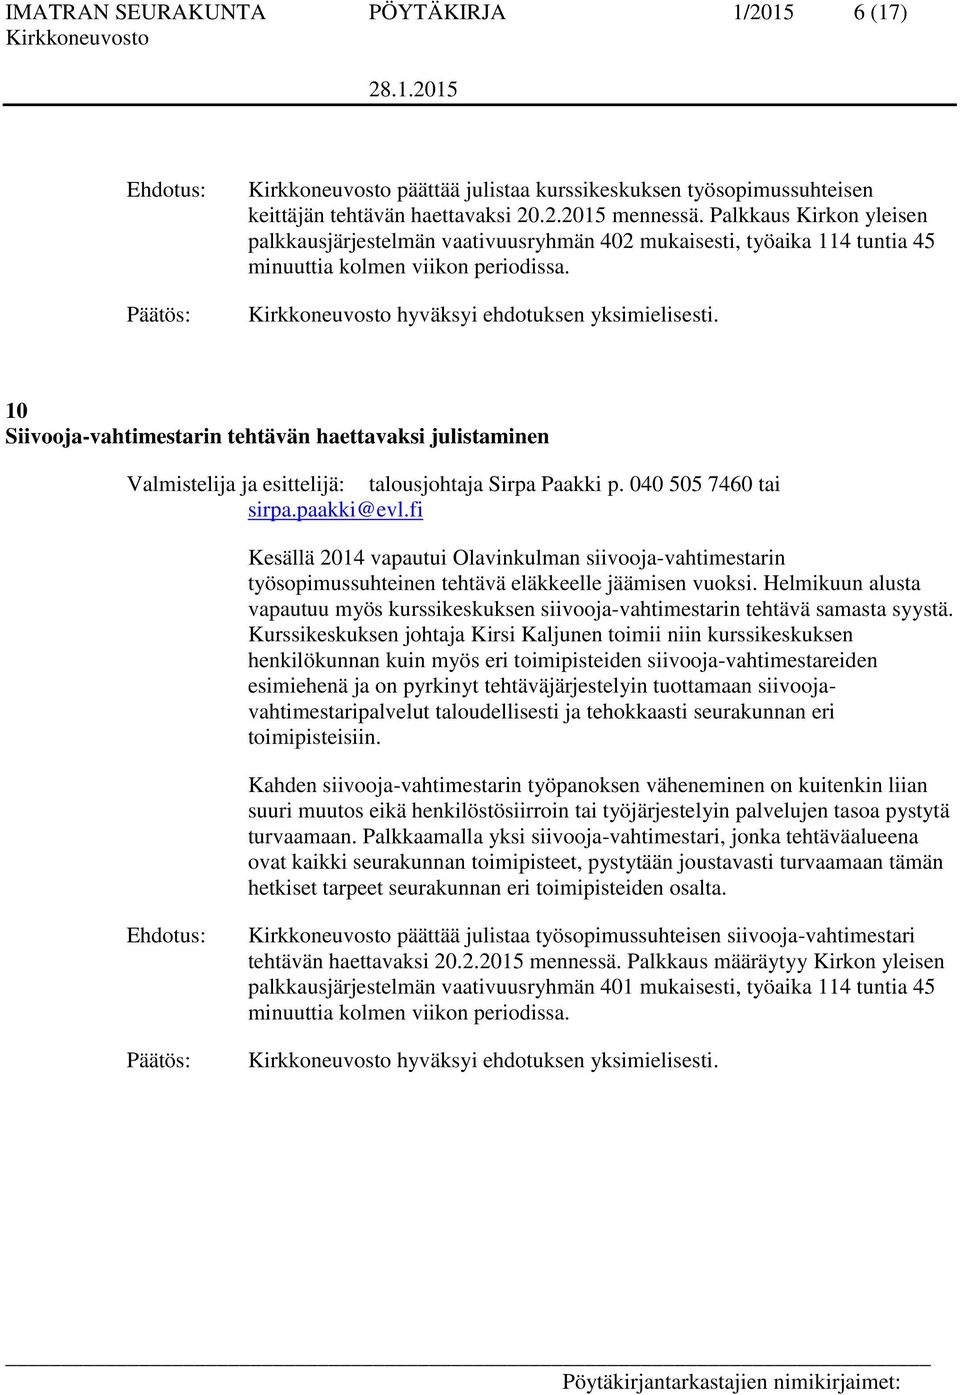 10 Siivooja-vahtimestarin tehtävän haettavaksi julistaminen tai sirpa.paakki@evl.fi Kesällä 2014 vapautui Olavinkulman siivooja-vahtimestarin työsopimussuhteinen tehtävä eläkkeelle jäämisen vuoksi.